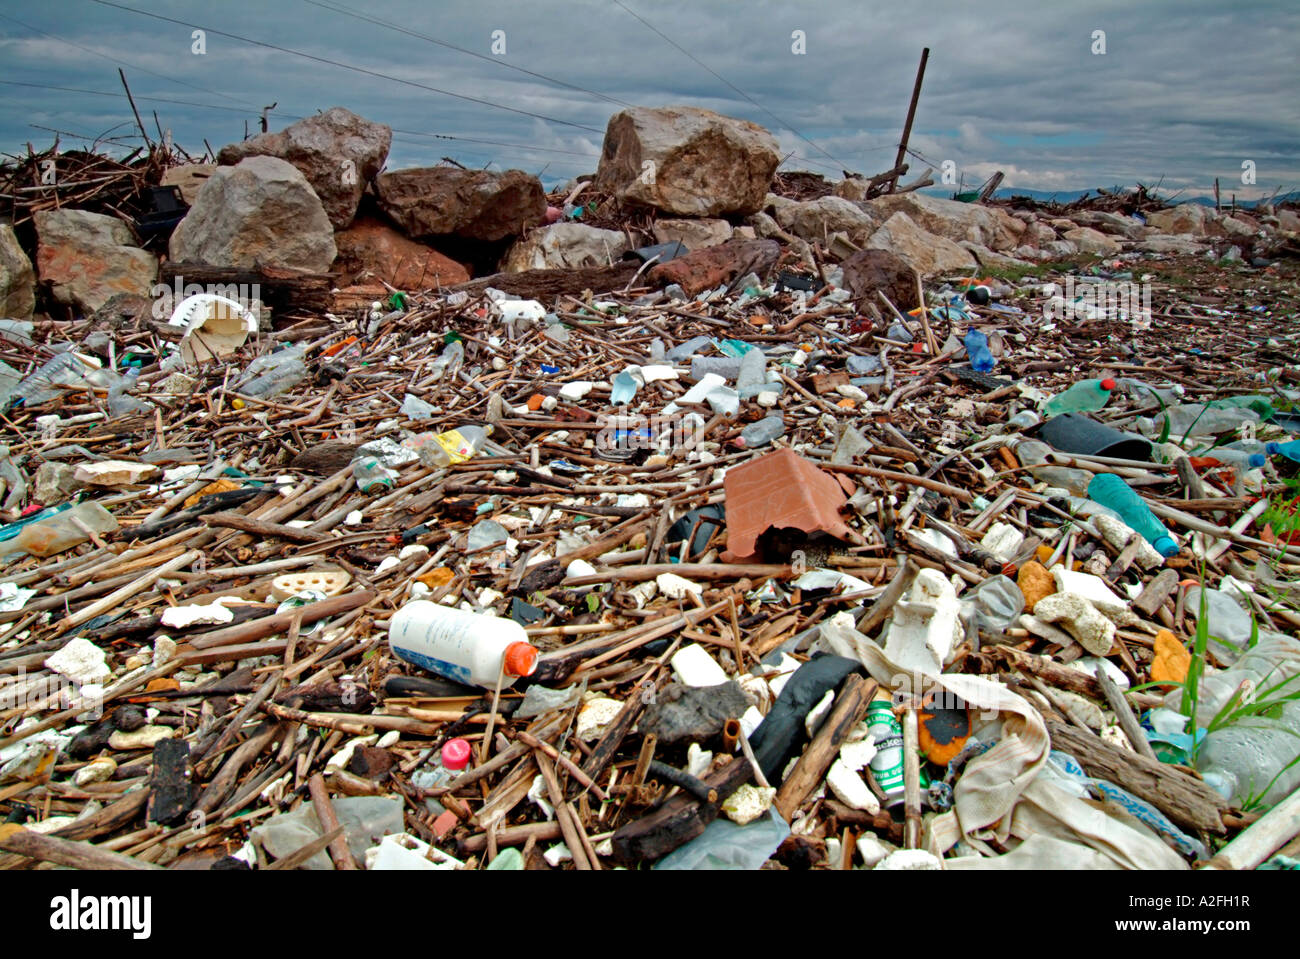 Rubbish on seashore at the beach of Pisa Tuscany Italy Stock Photo